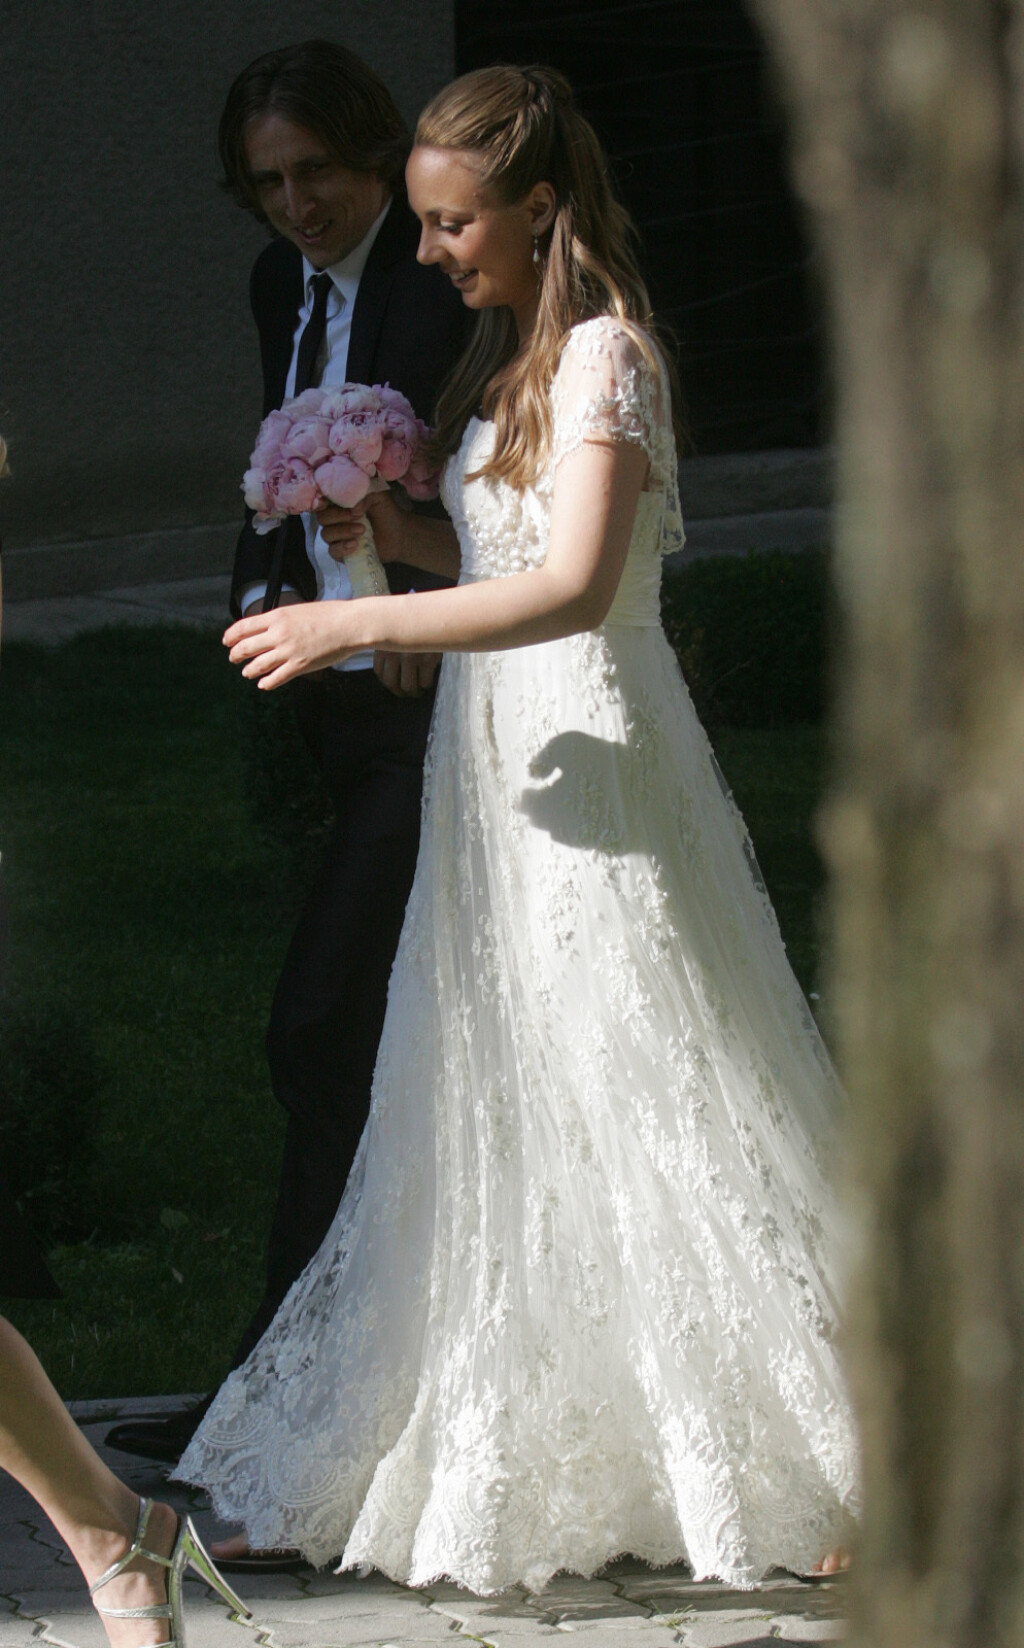 Vjenčanje Vanje i Luke Modrića u lipnju 2011. godine